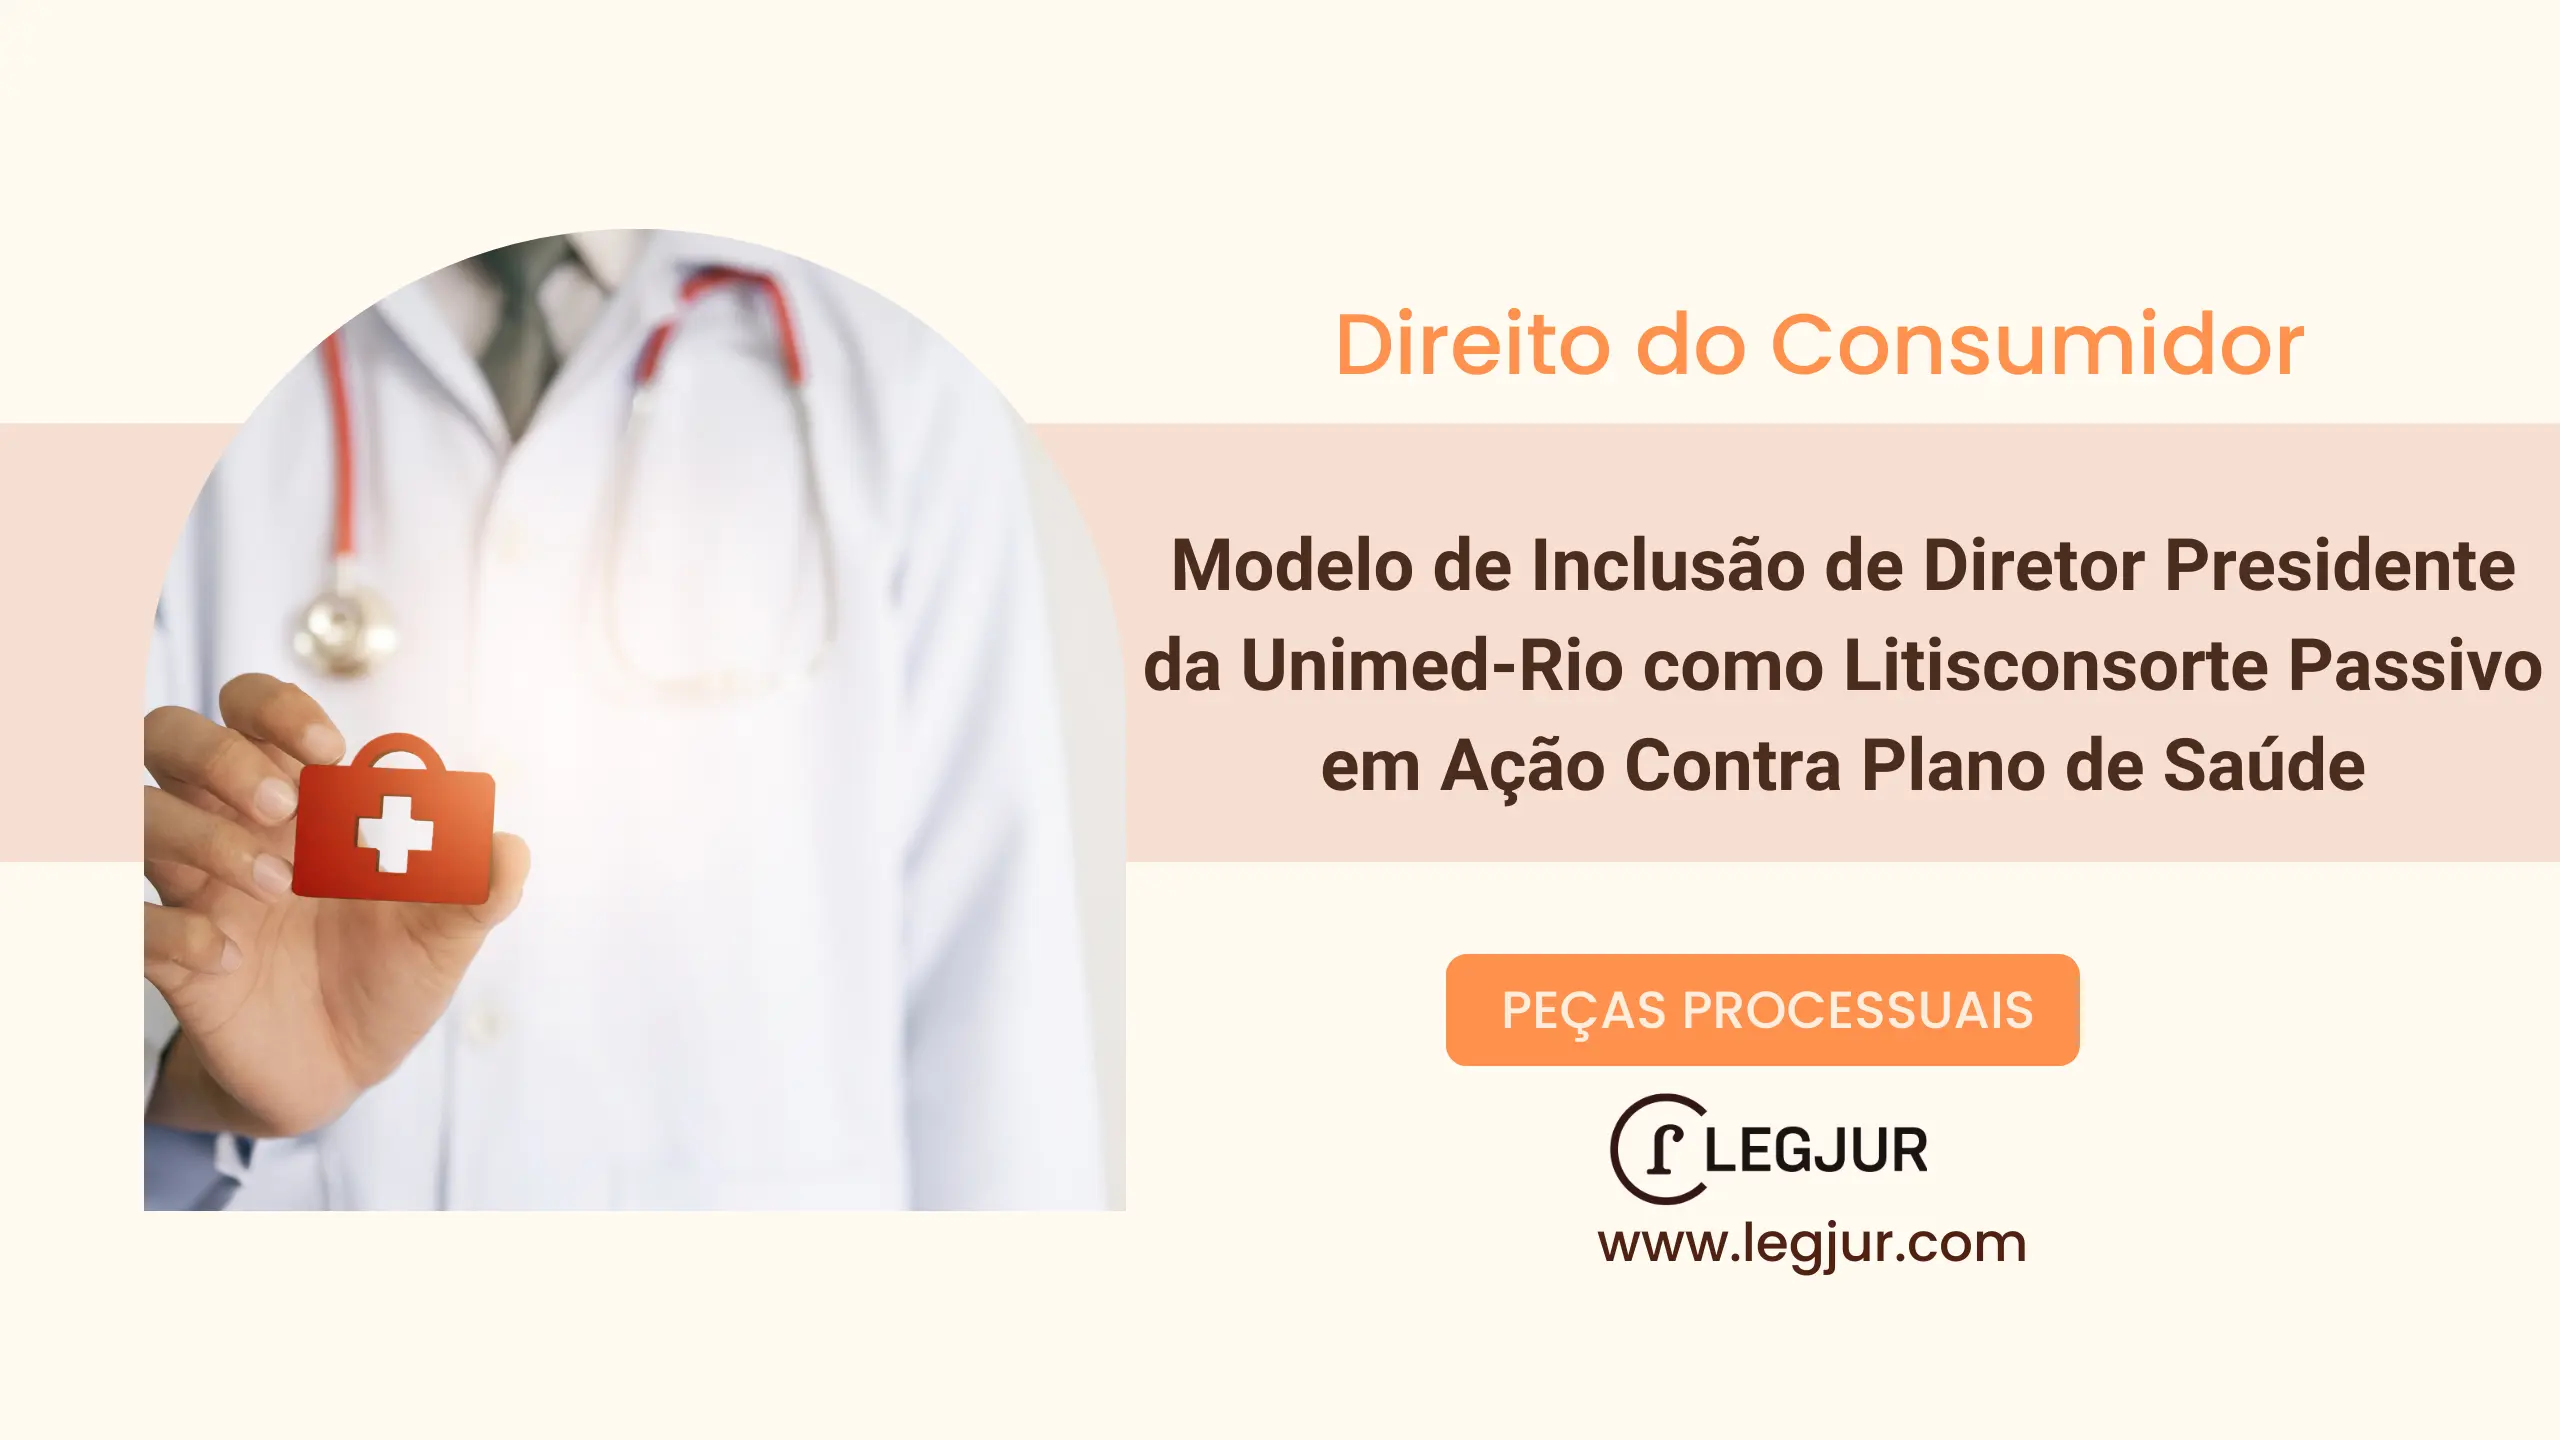 Modelo de Inclusão de Diretor Presidente da Unimed-Rio como Litisconsorte Passivo em Ação Contra Plano de Saúde